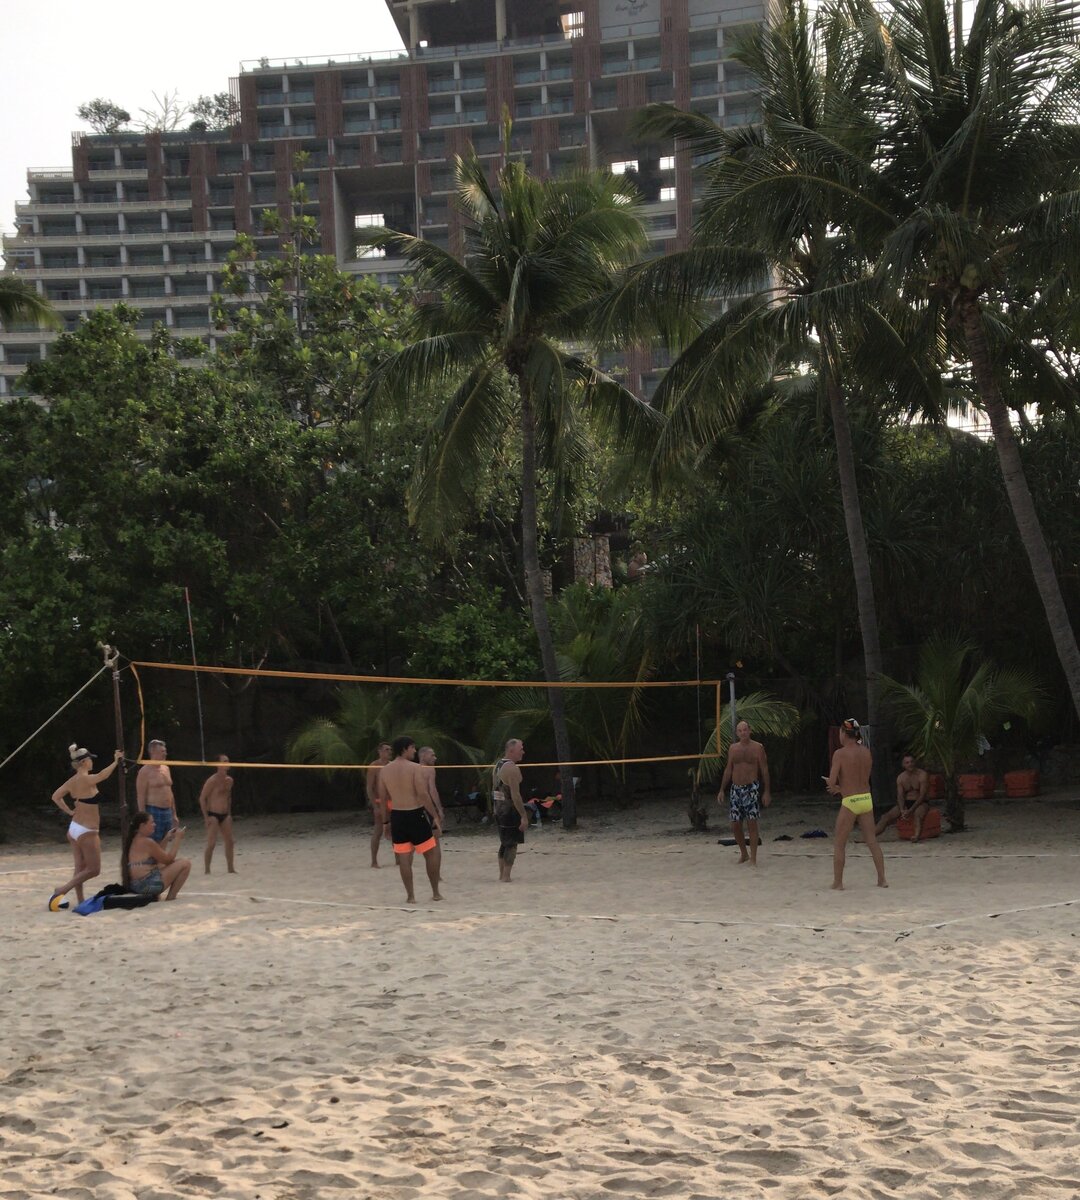 Пляжный волейбол, куда же без него. Наши люди в любой стране организовывают себе такой досуг 